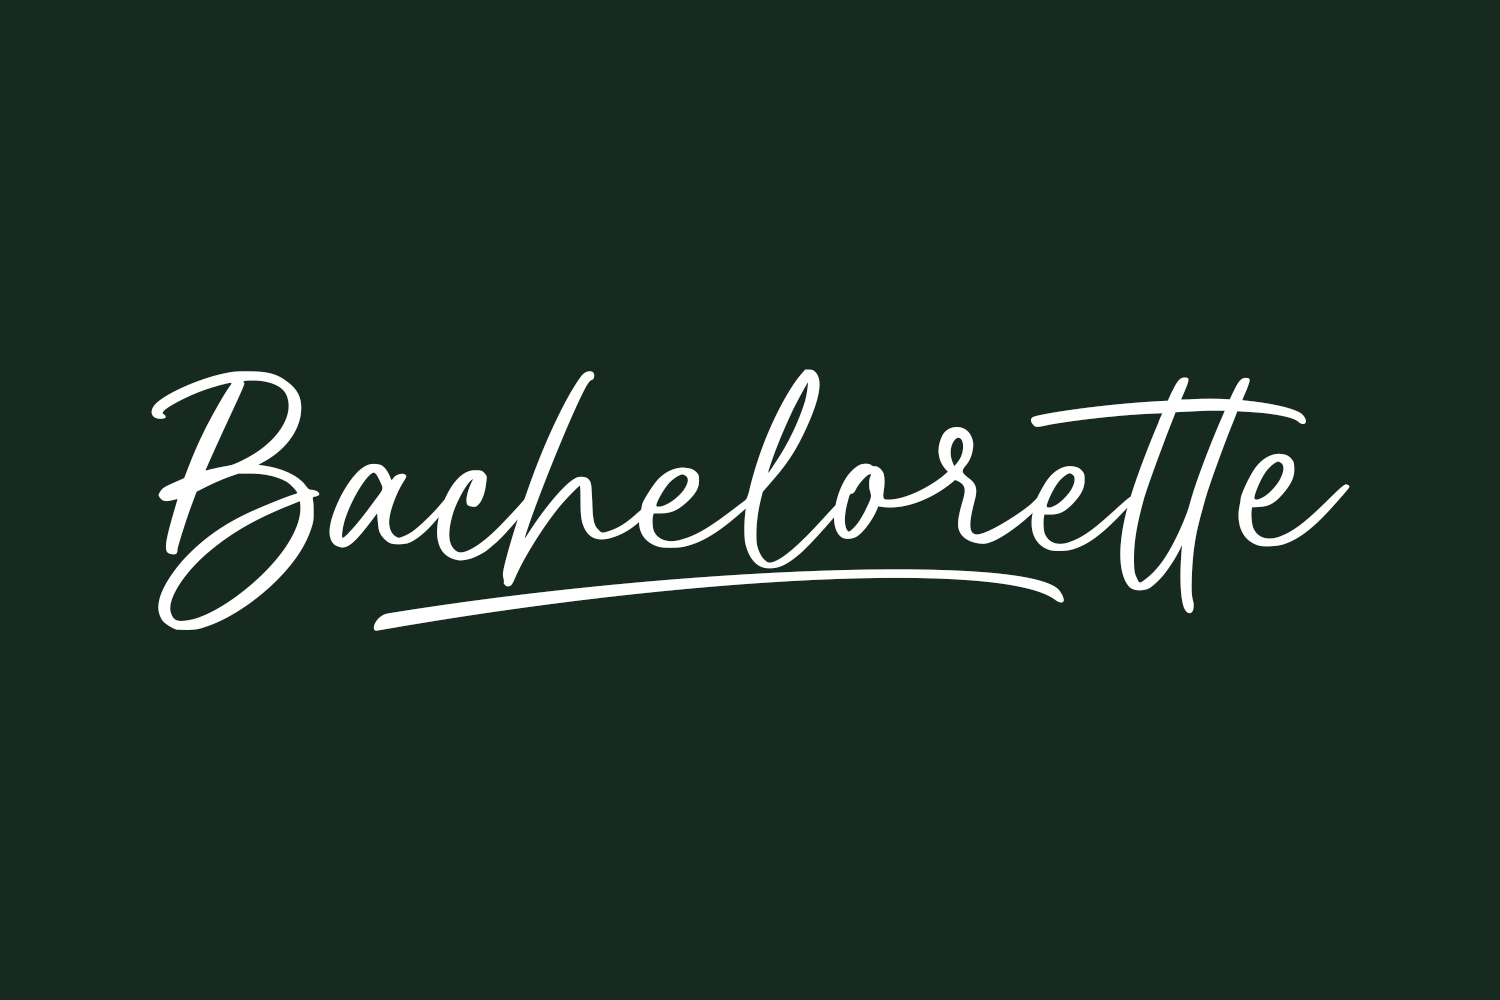 Bachelorette Free Font